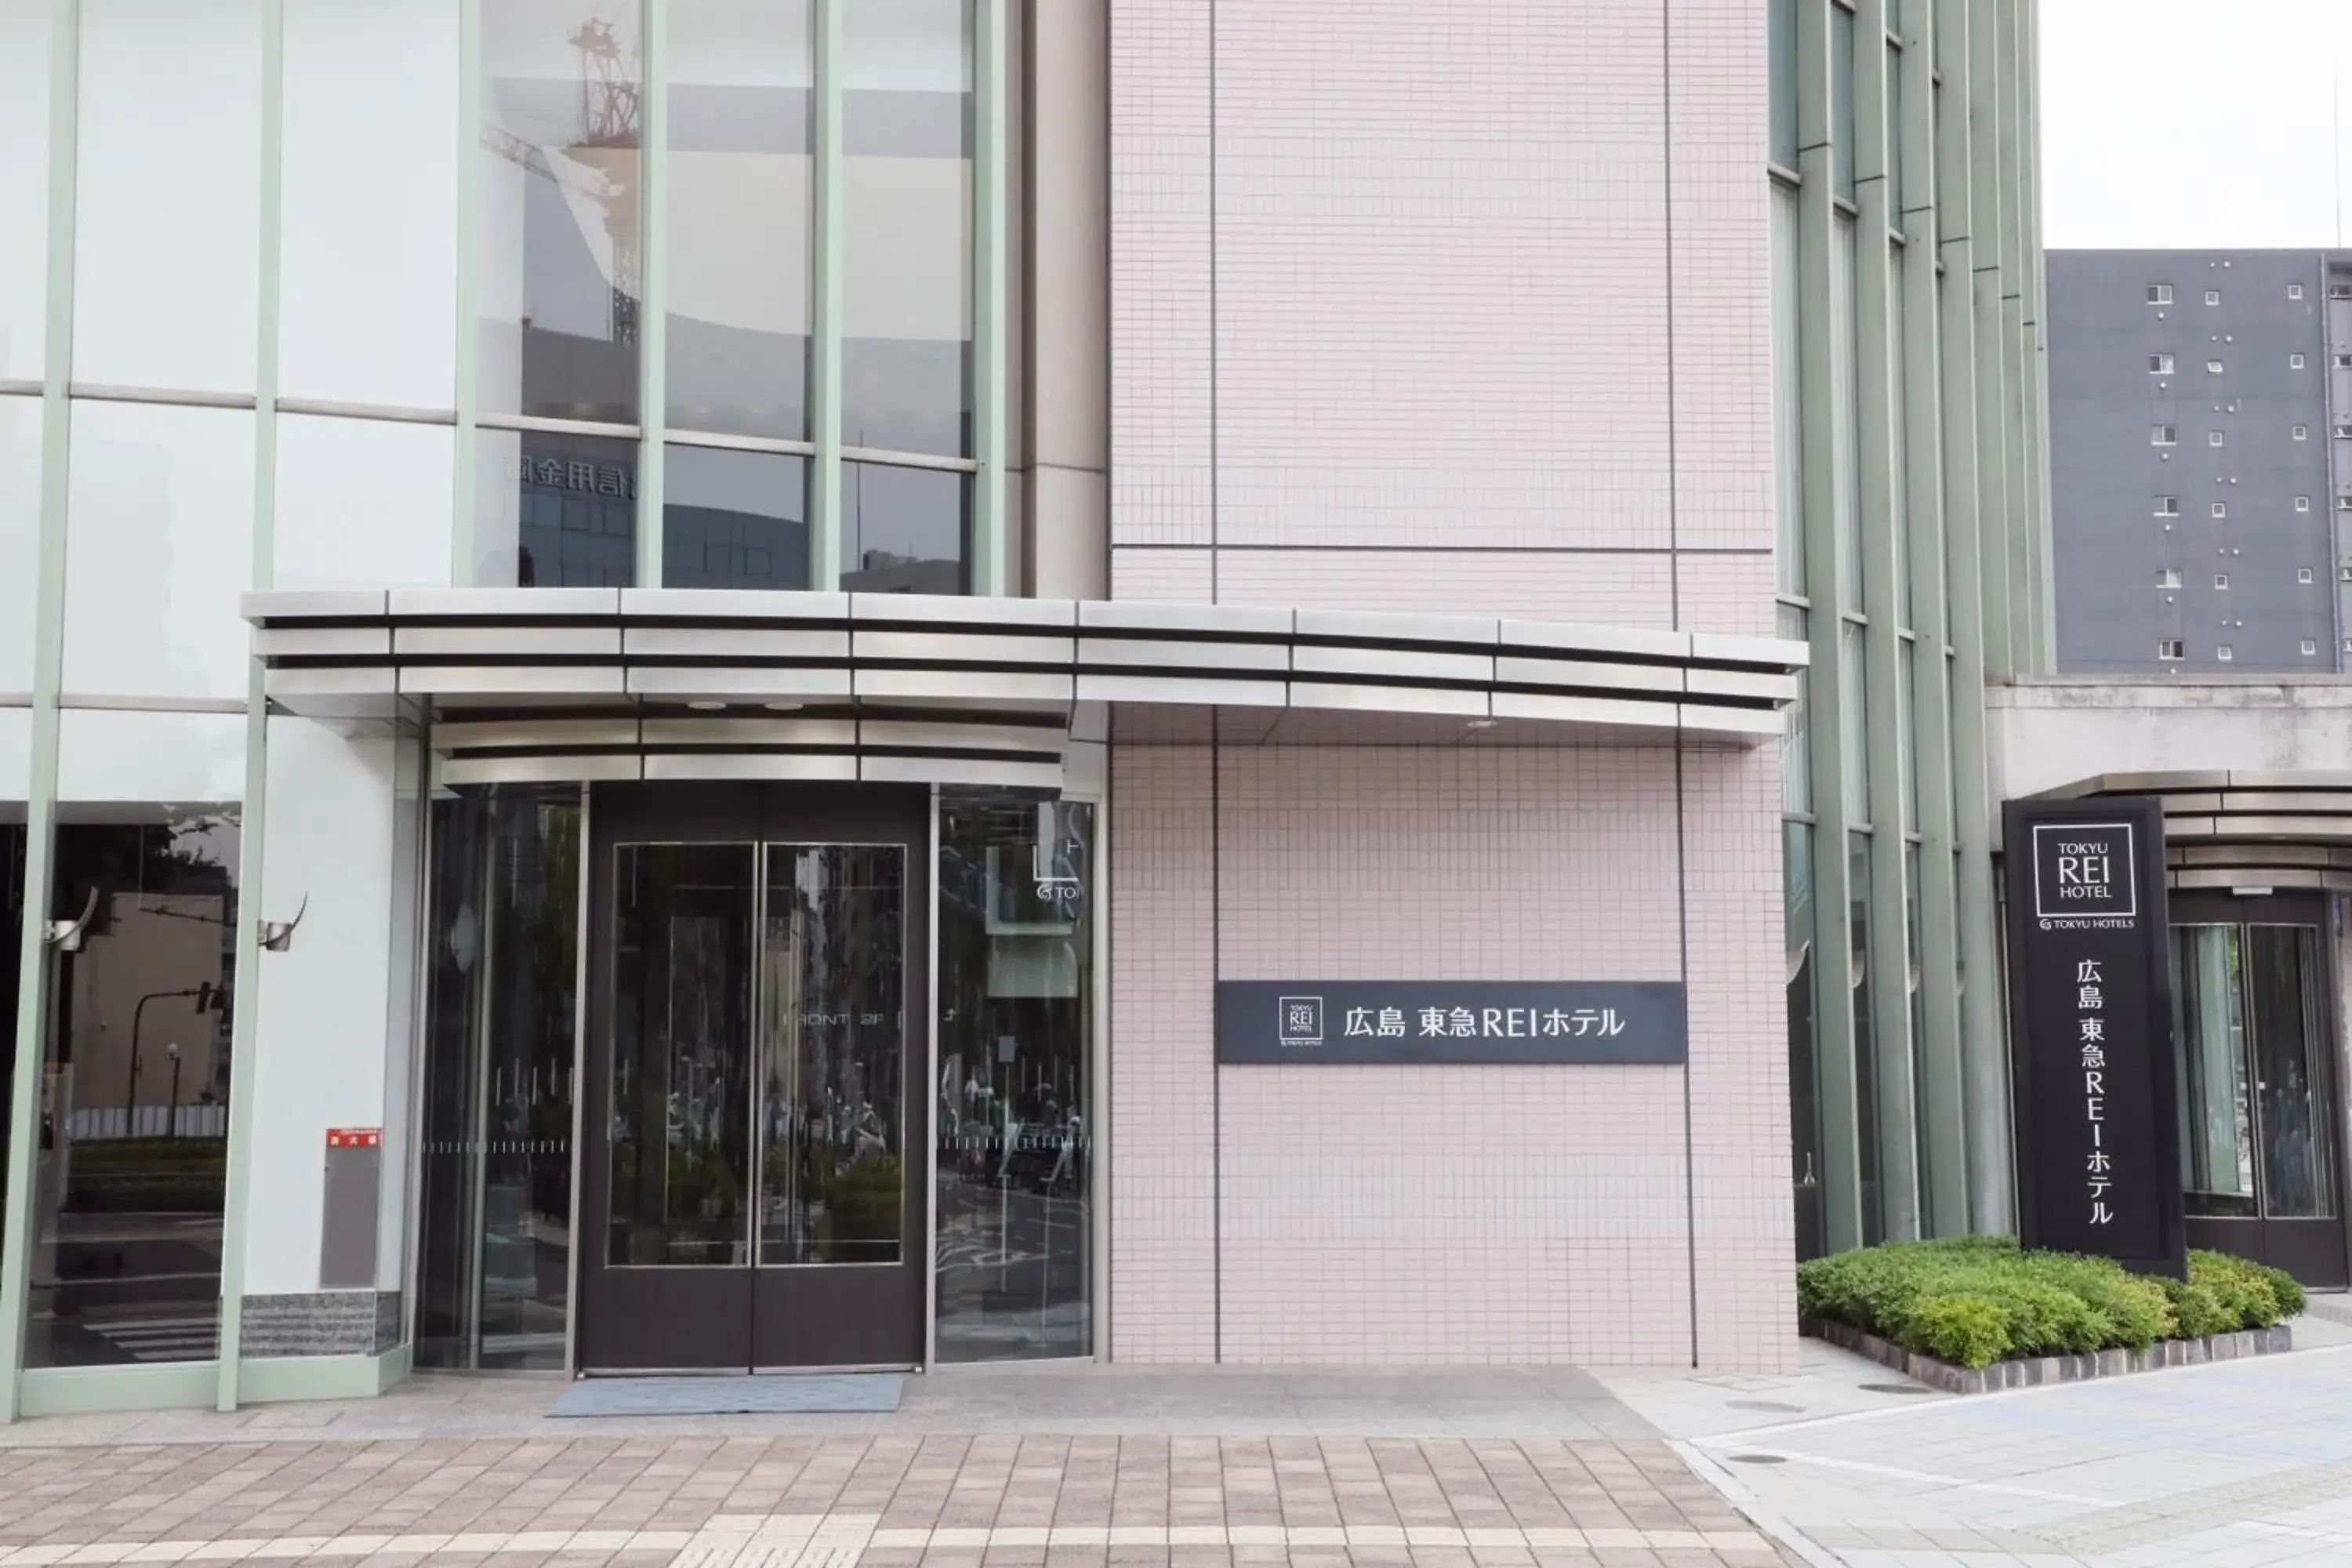 Facade/entrance in Hiroshima Tokyu Rei Hotel